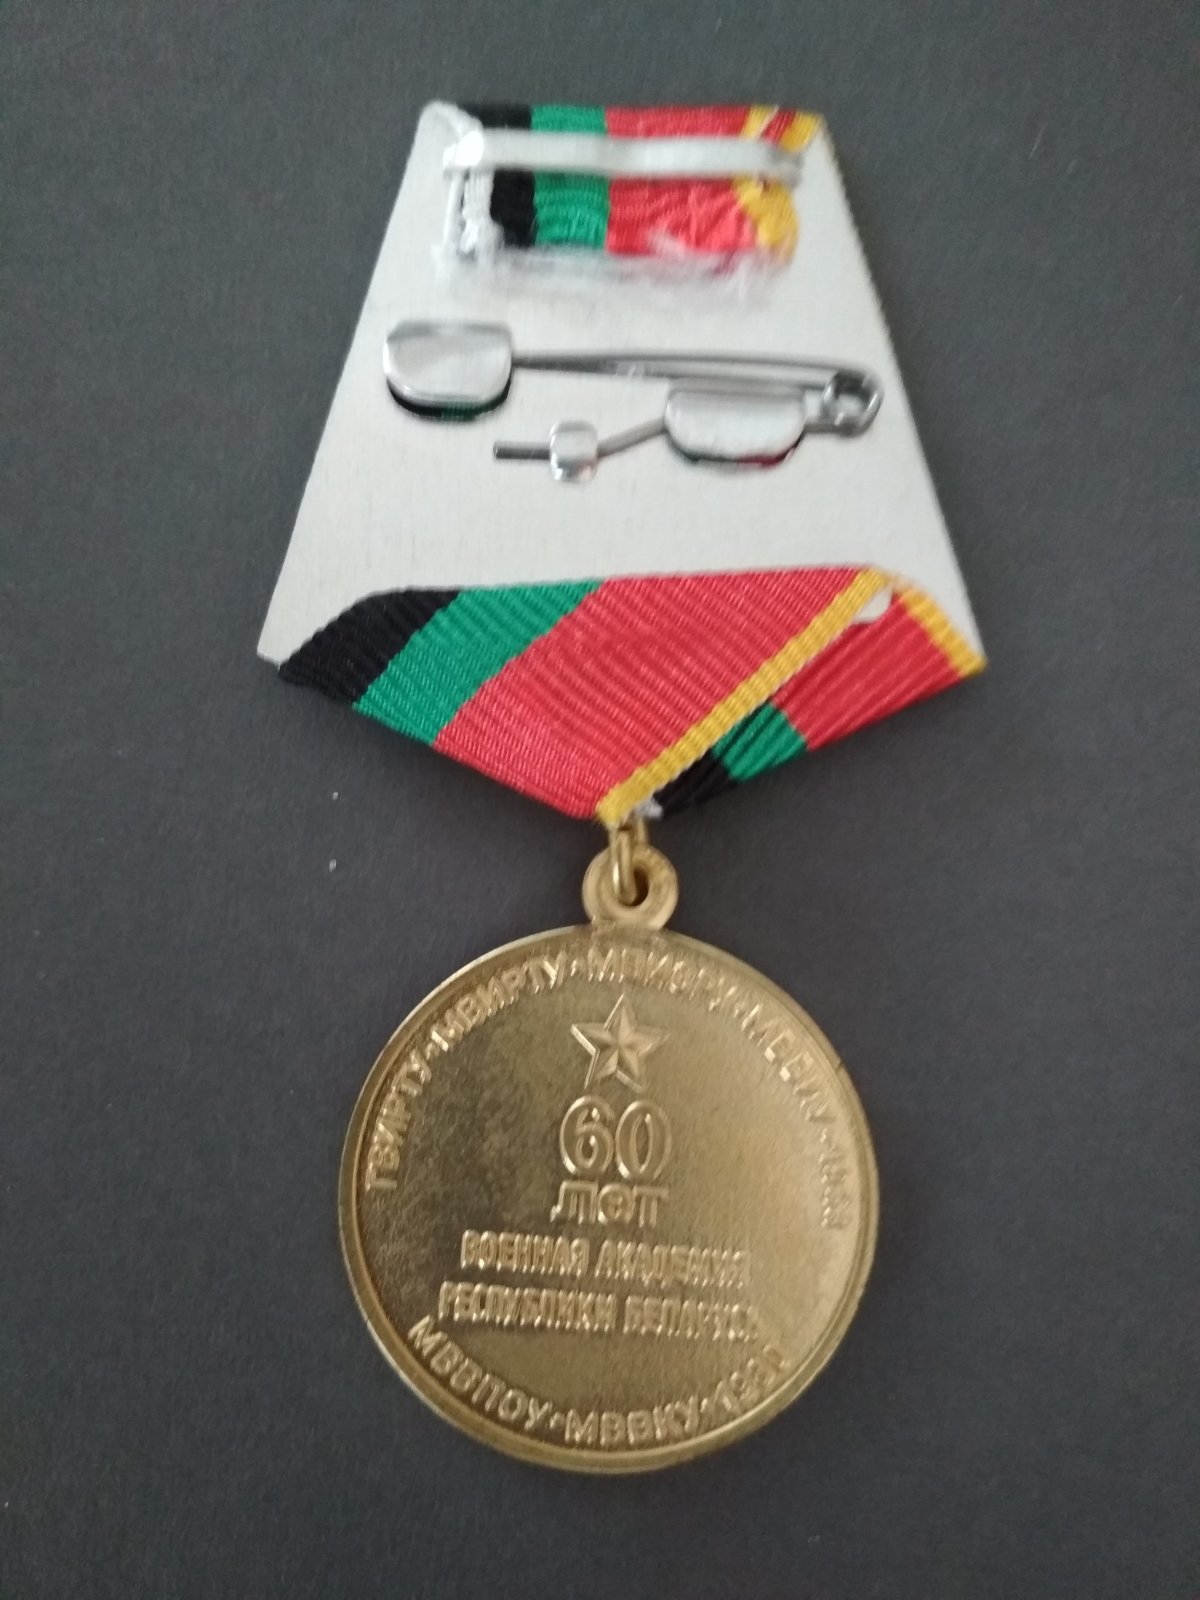 Медаль "60 лет военной академии Республики Беларусь".